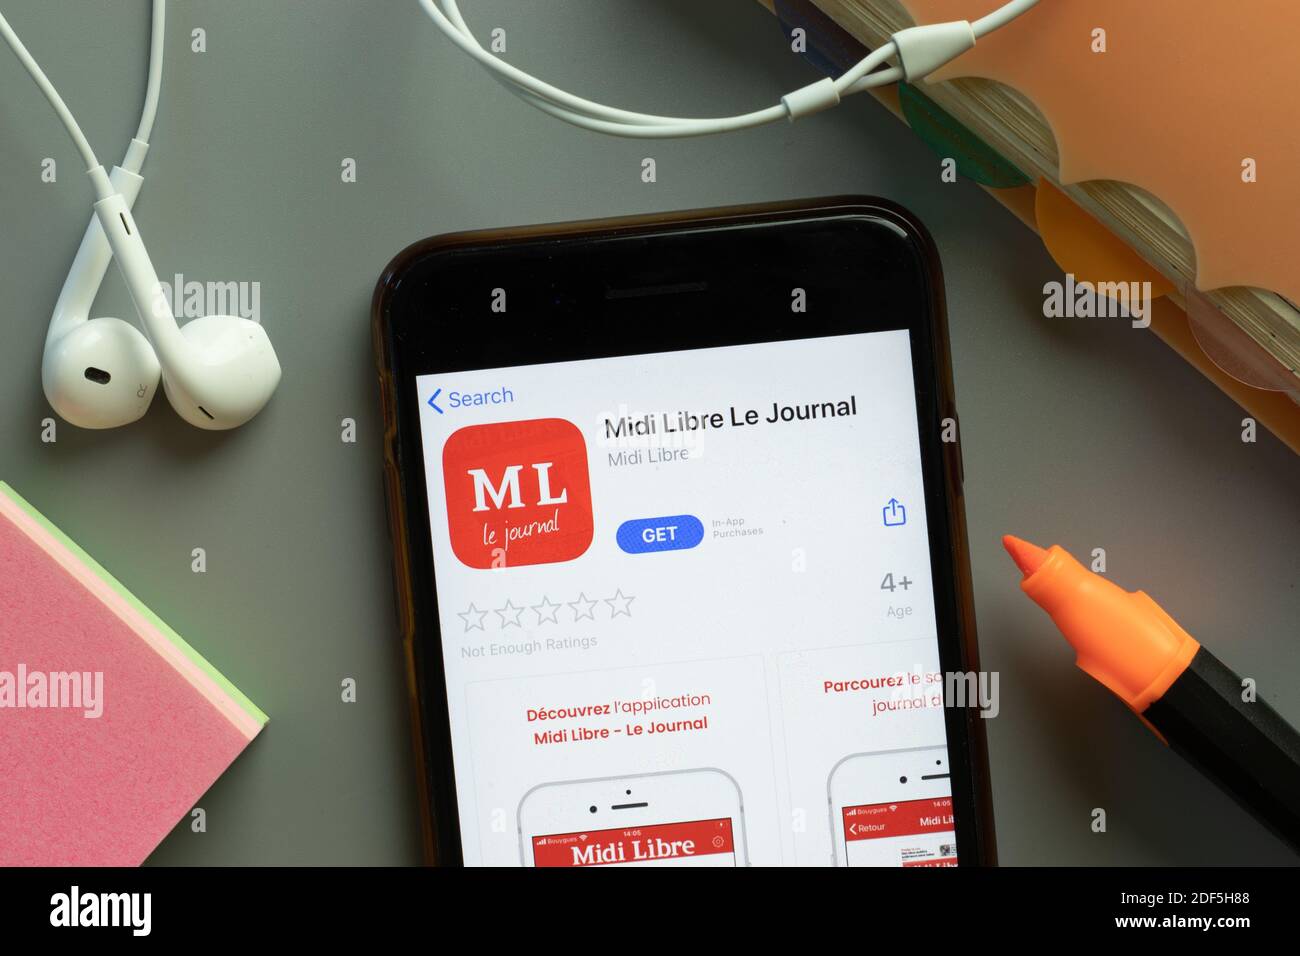 New York, USA - 1 dicembre 2020: Icona dell'app mobile Midi Libre le Journal sullo schermo del telefono vista dall'alto, editoriale illustrativo. Foto Stock